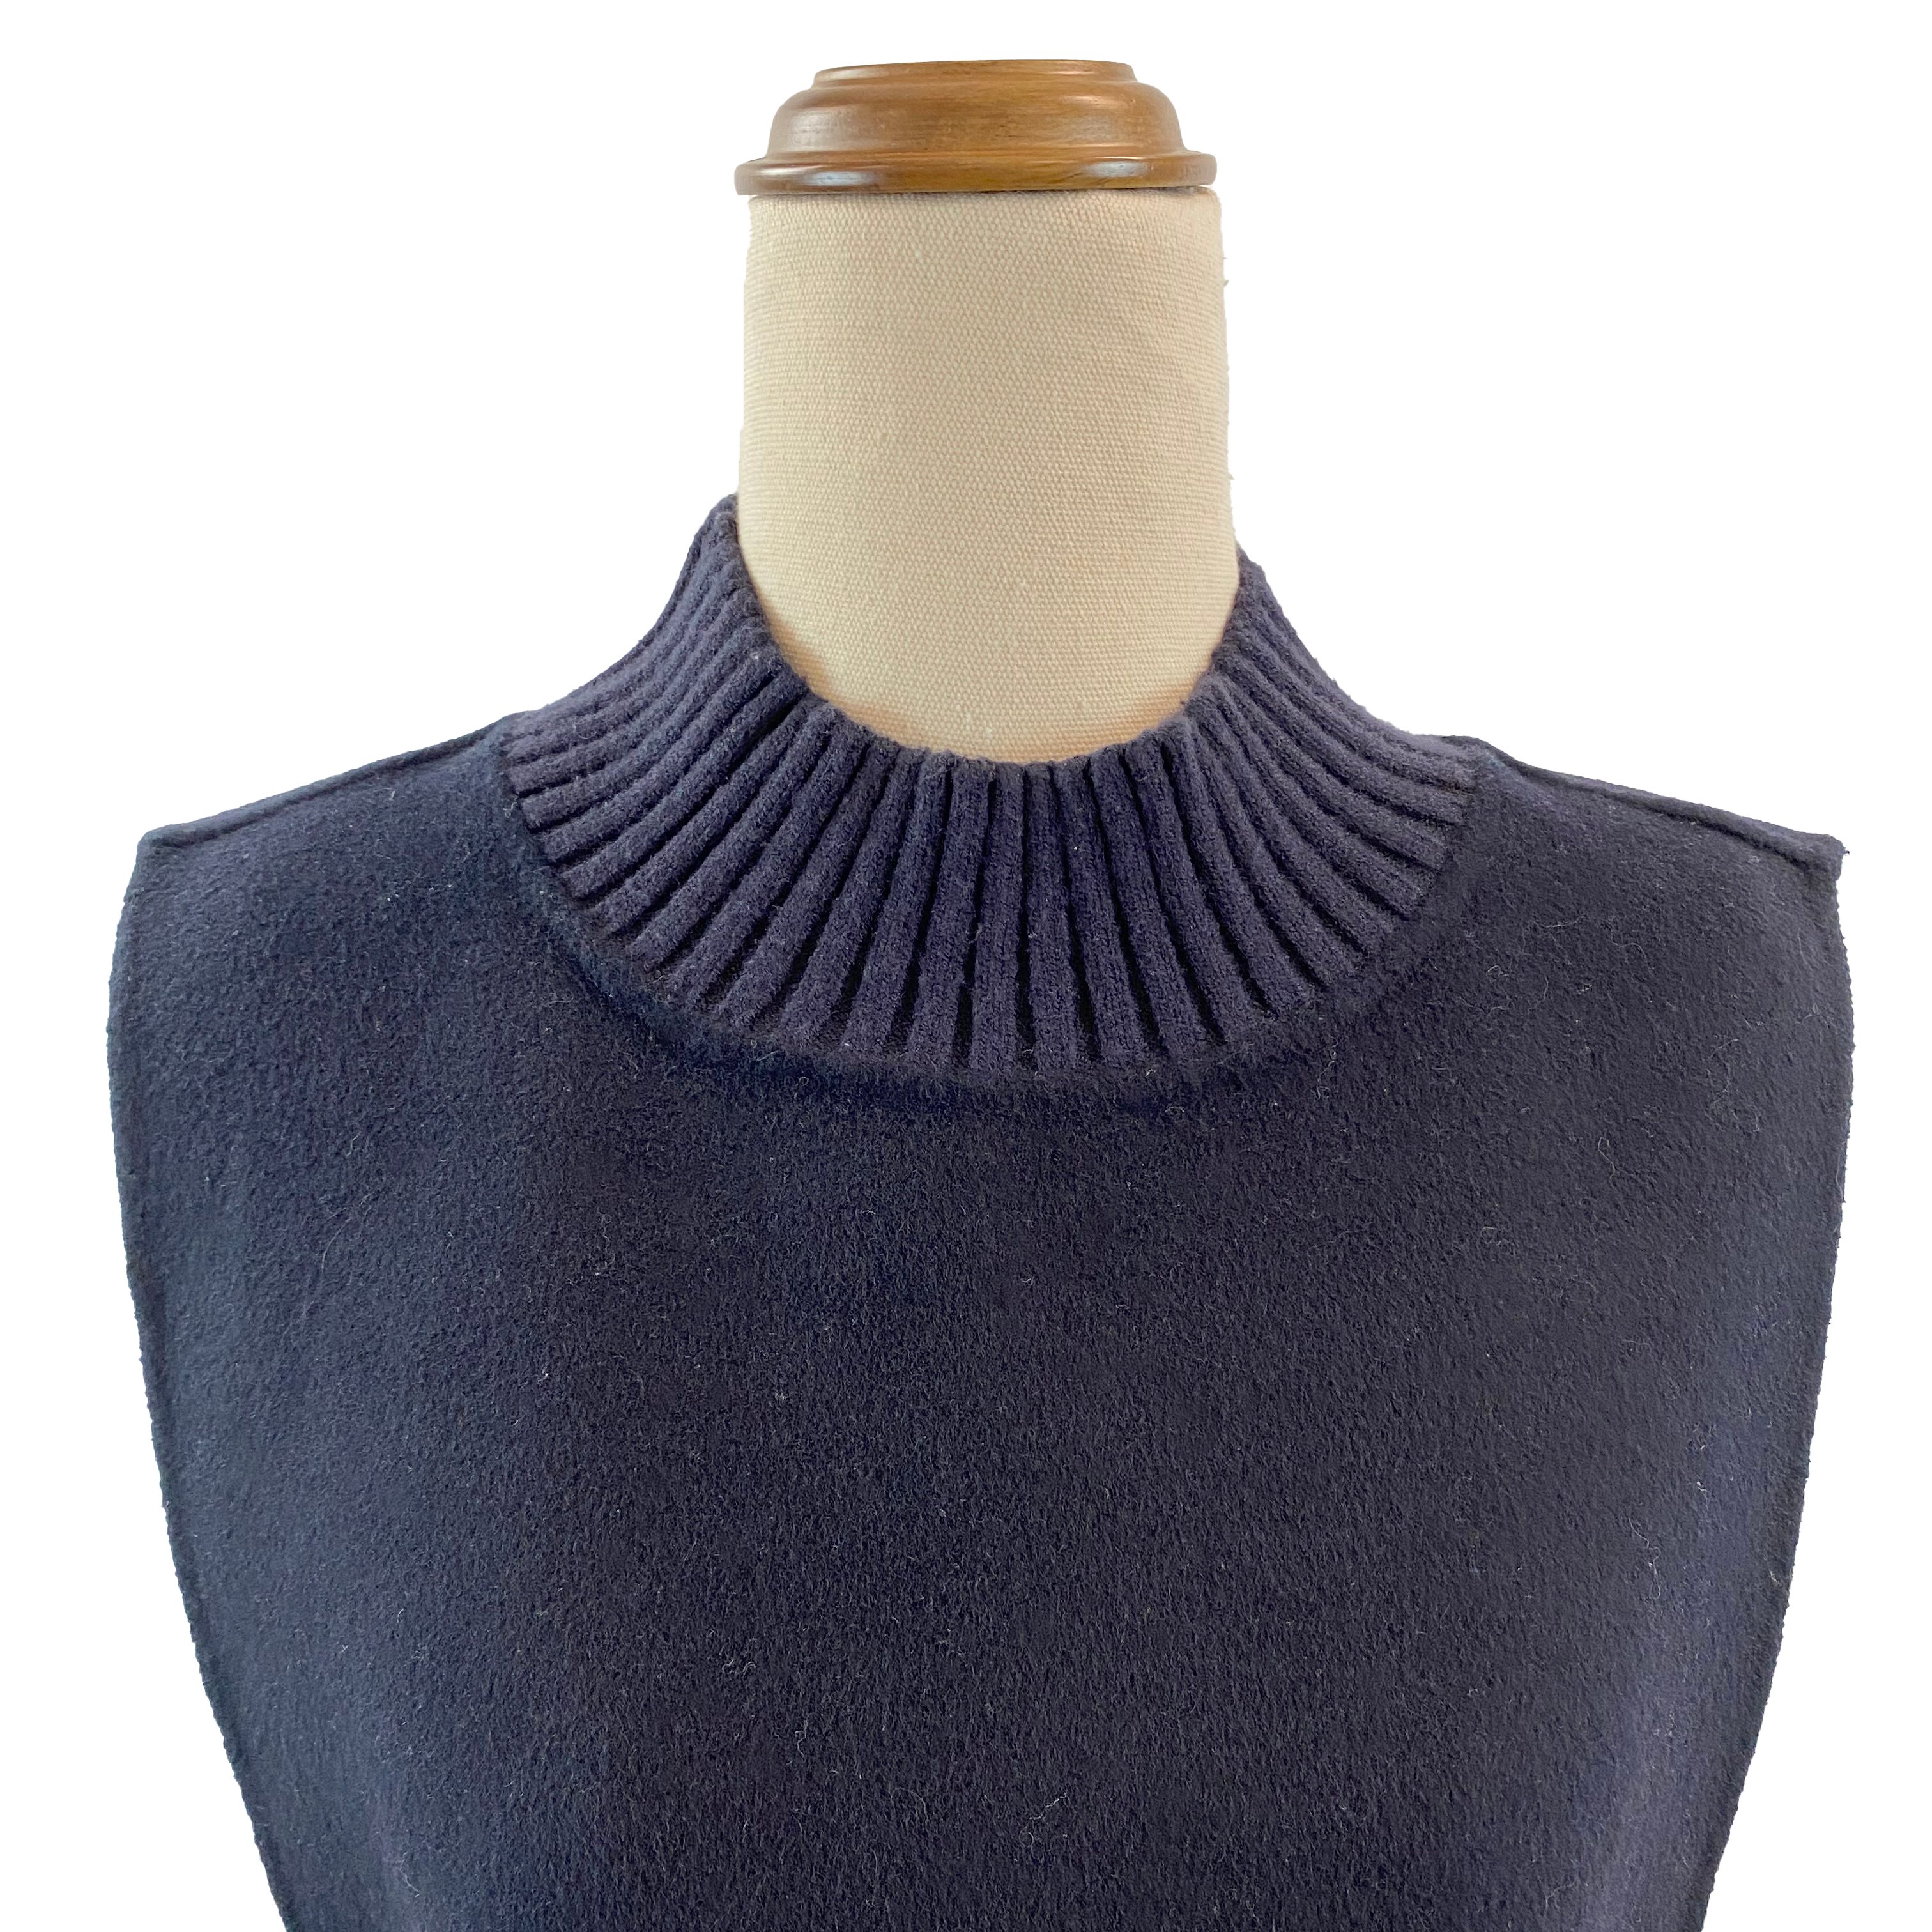 Morrison Women's Navy Wool-blend Sleeveless Top